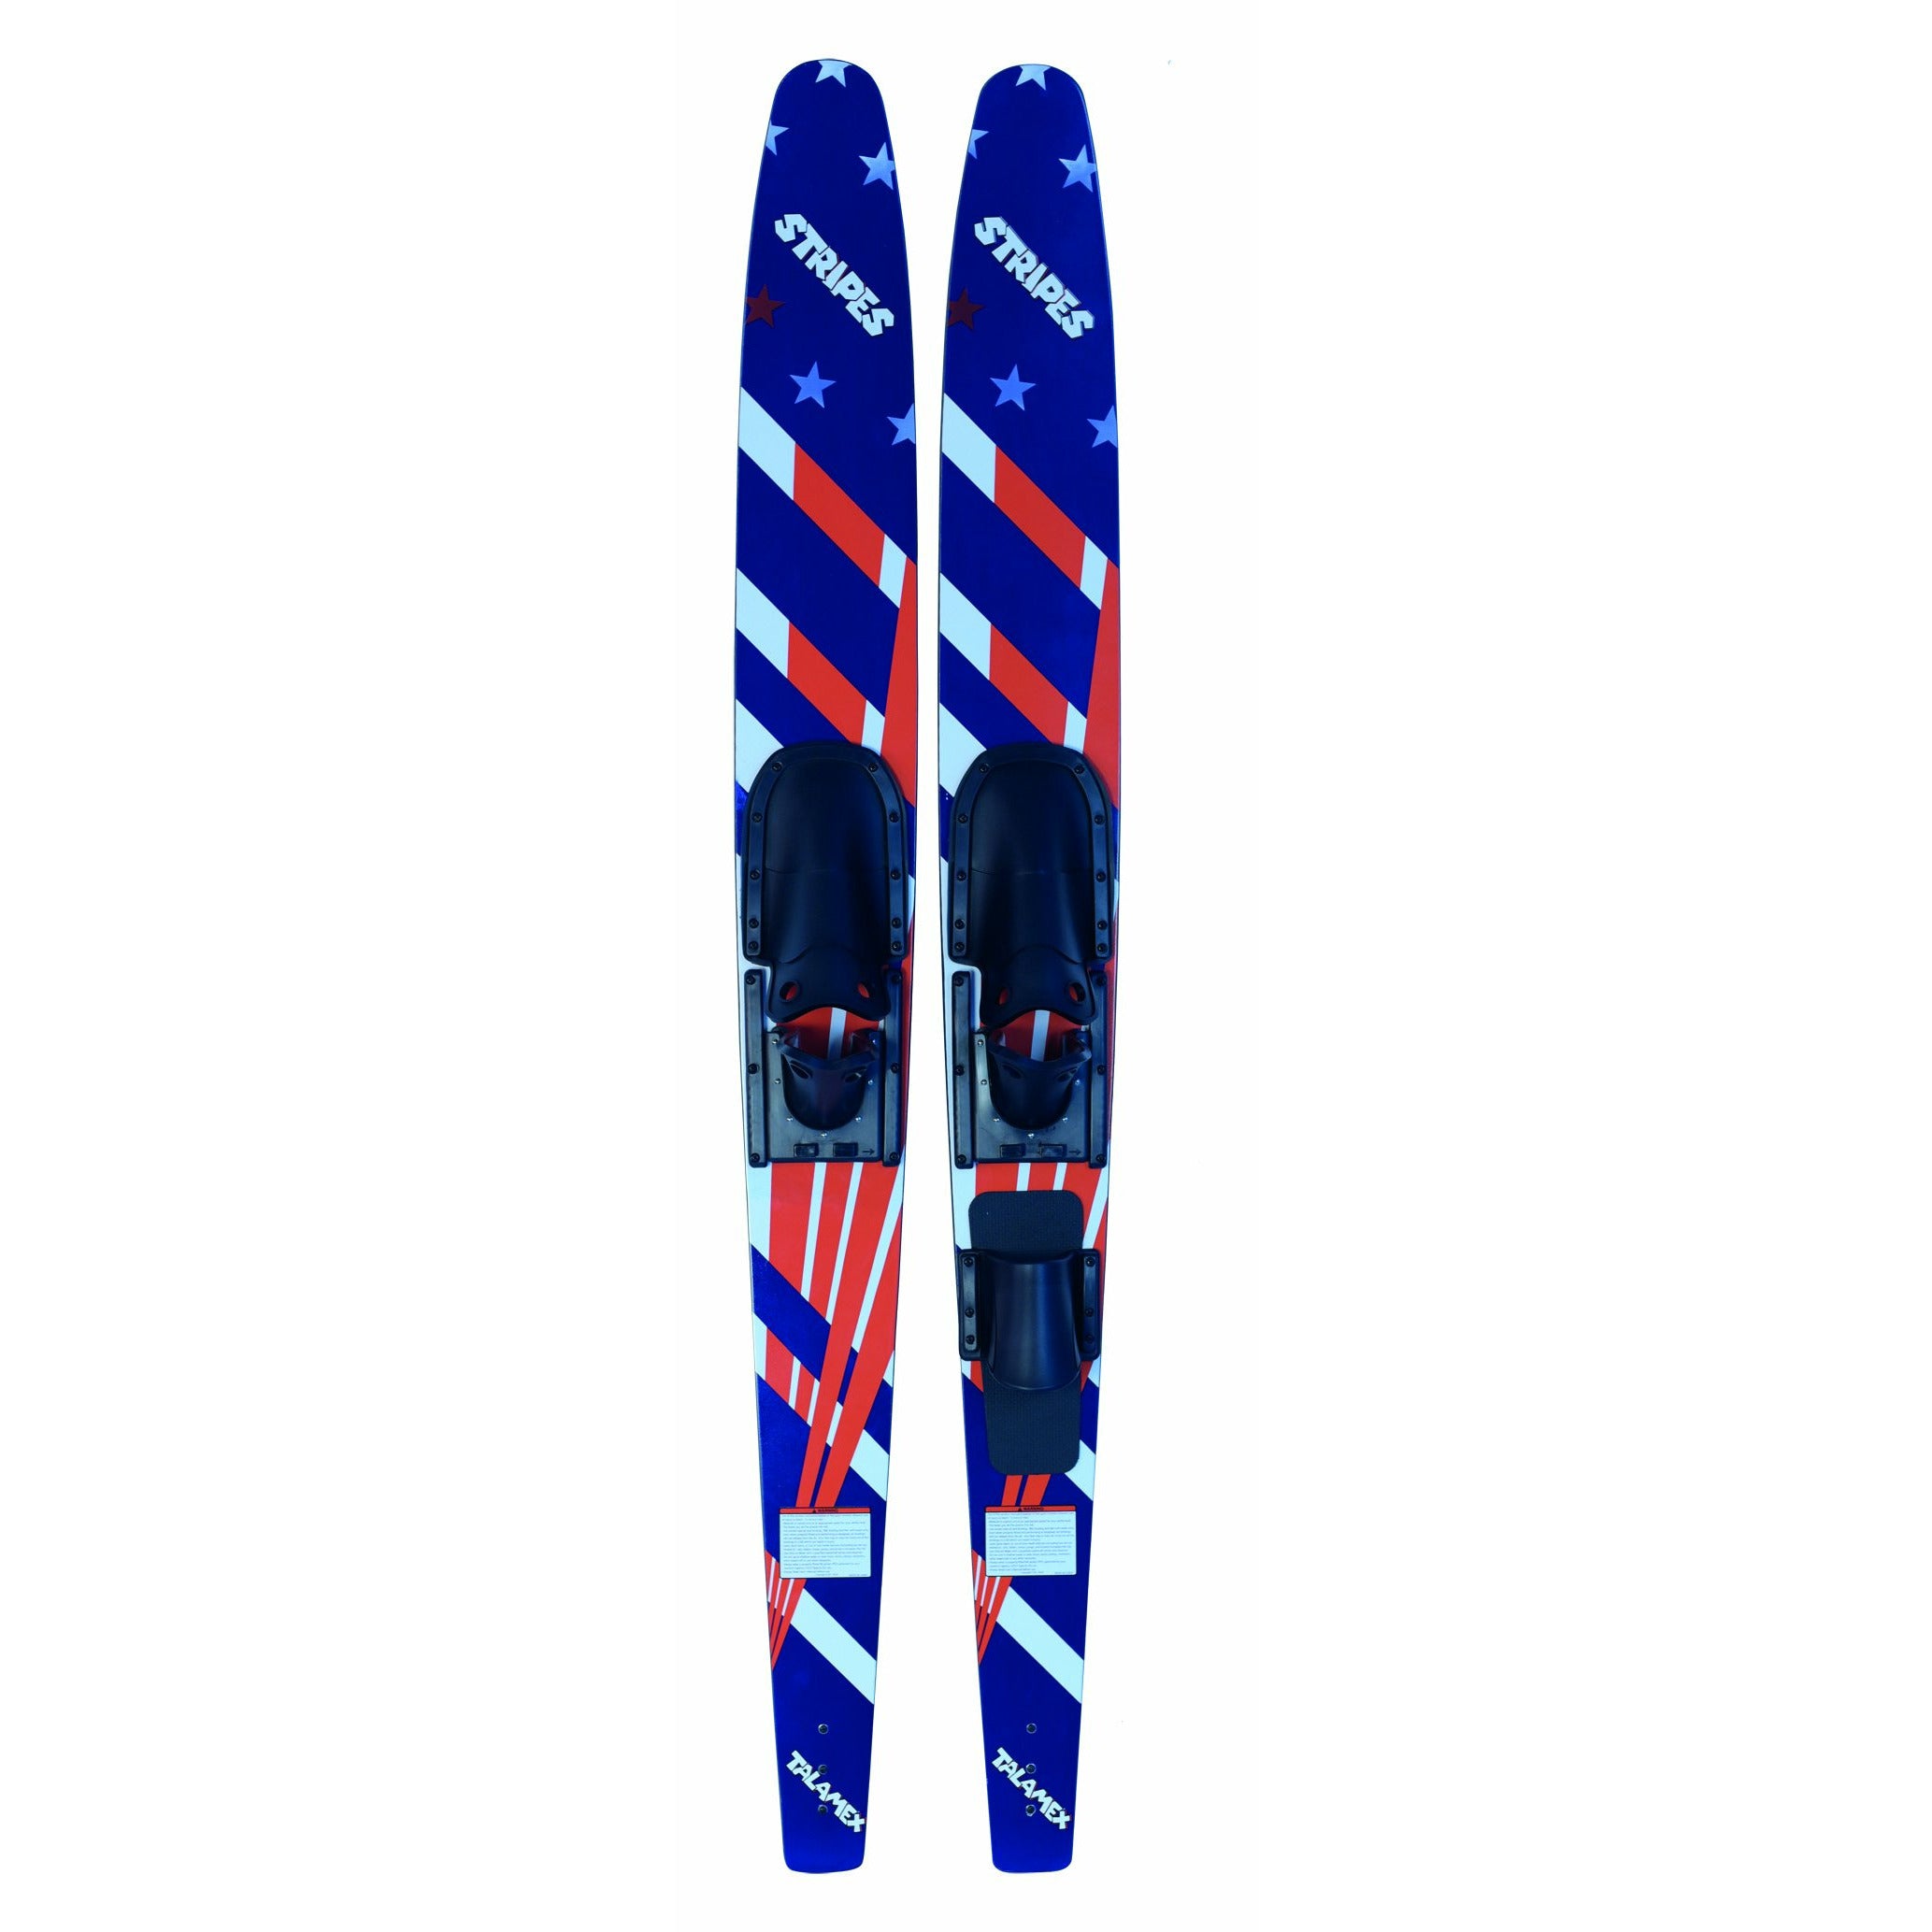 Talamex Stripes Ski 69' 95650356